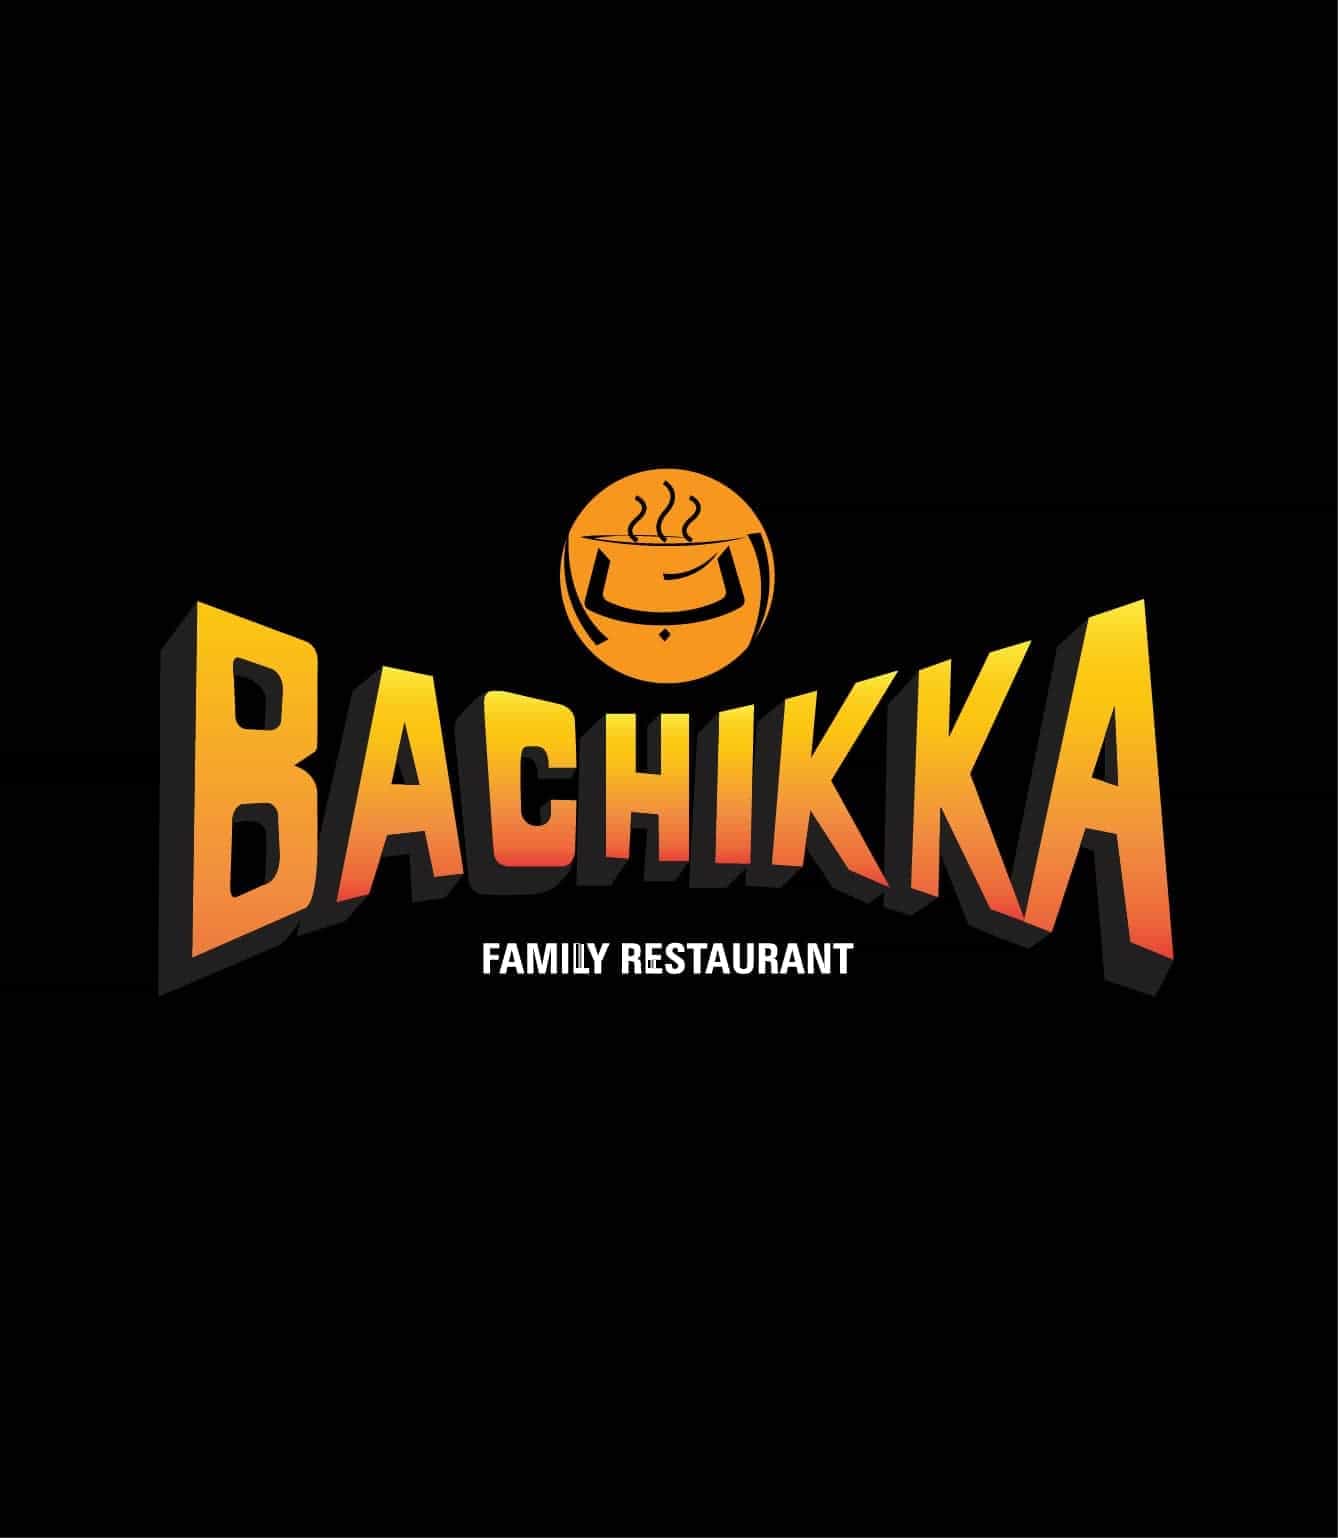 Bachikka Family Restaurant